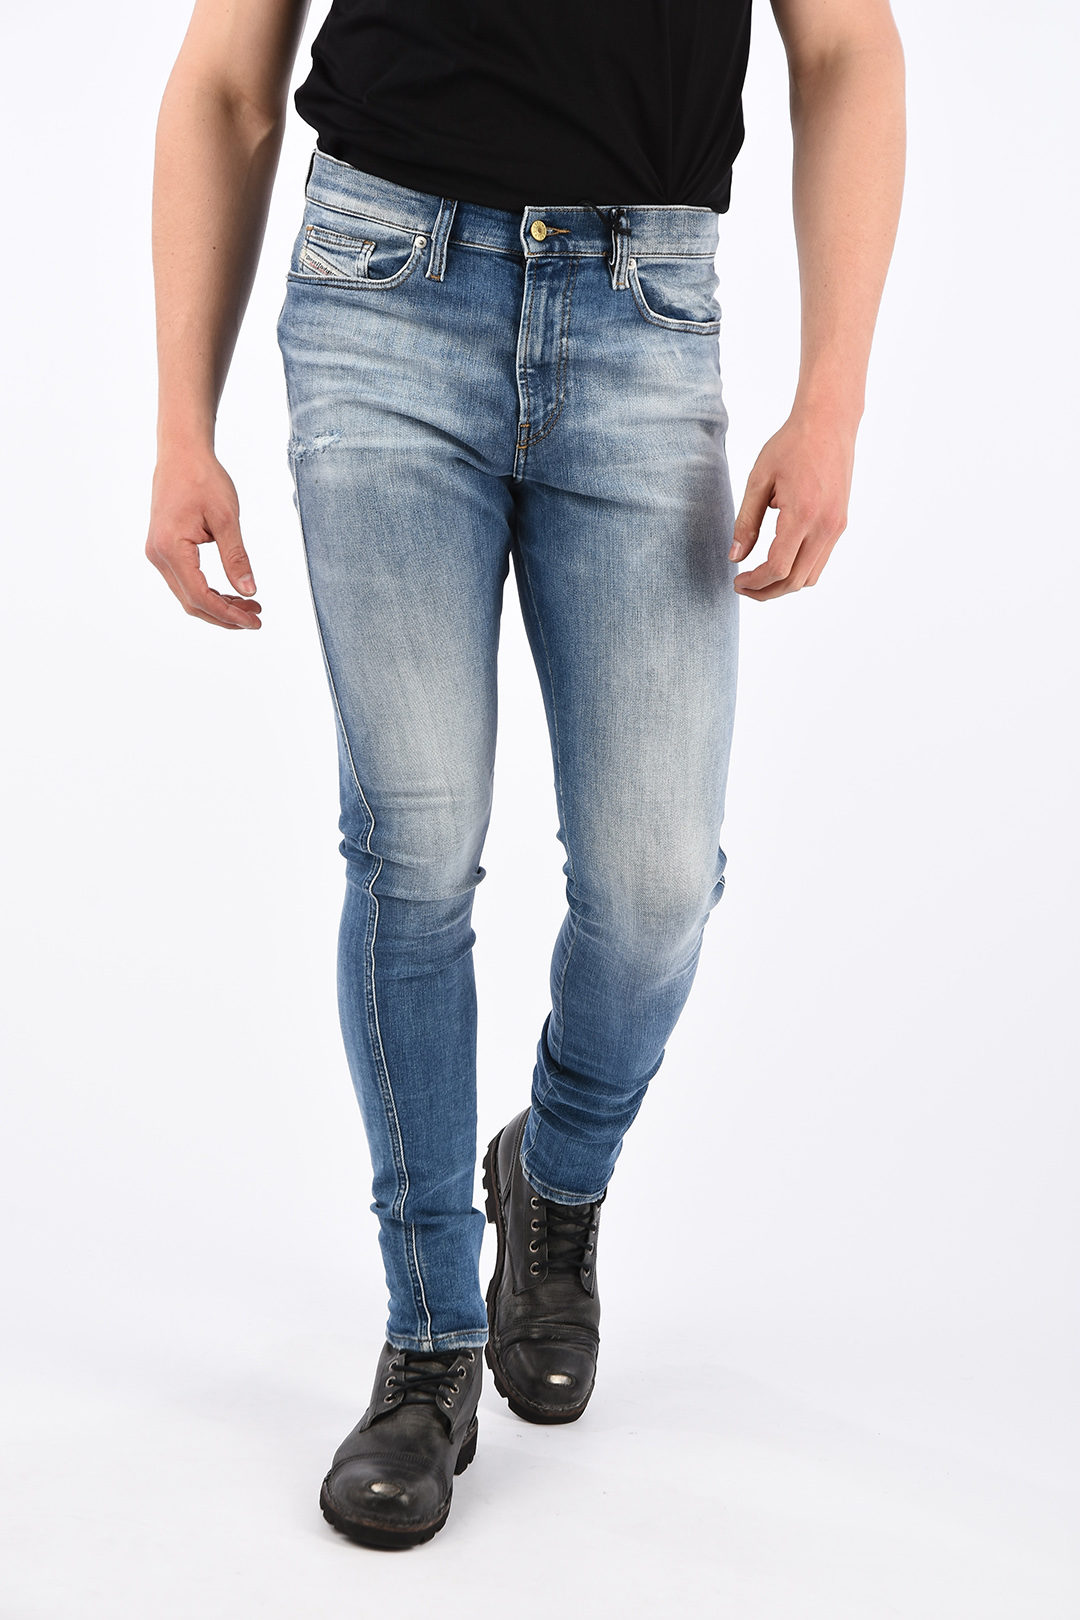 Dij heelal Voetzool Diesel 15cm Super Skinny Fit D-ISTORT Jeans L.32 men - Glamood Outlet